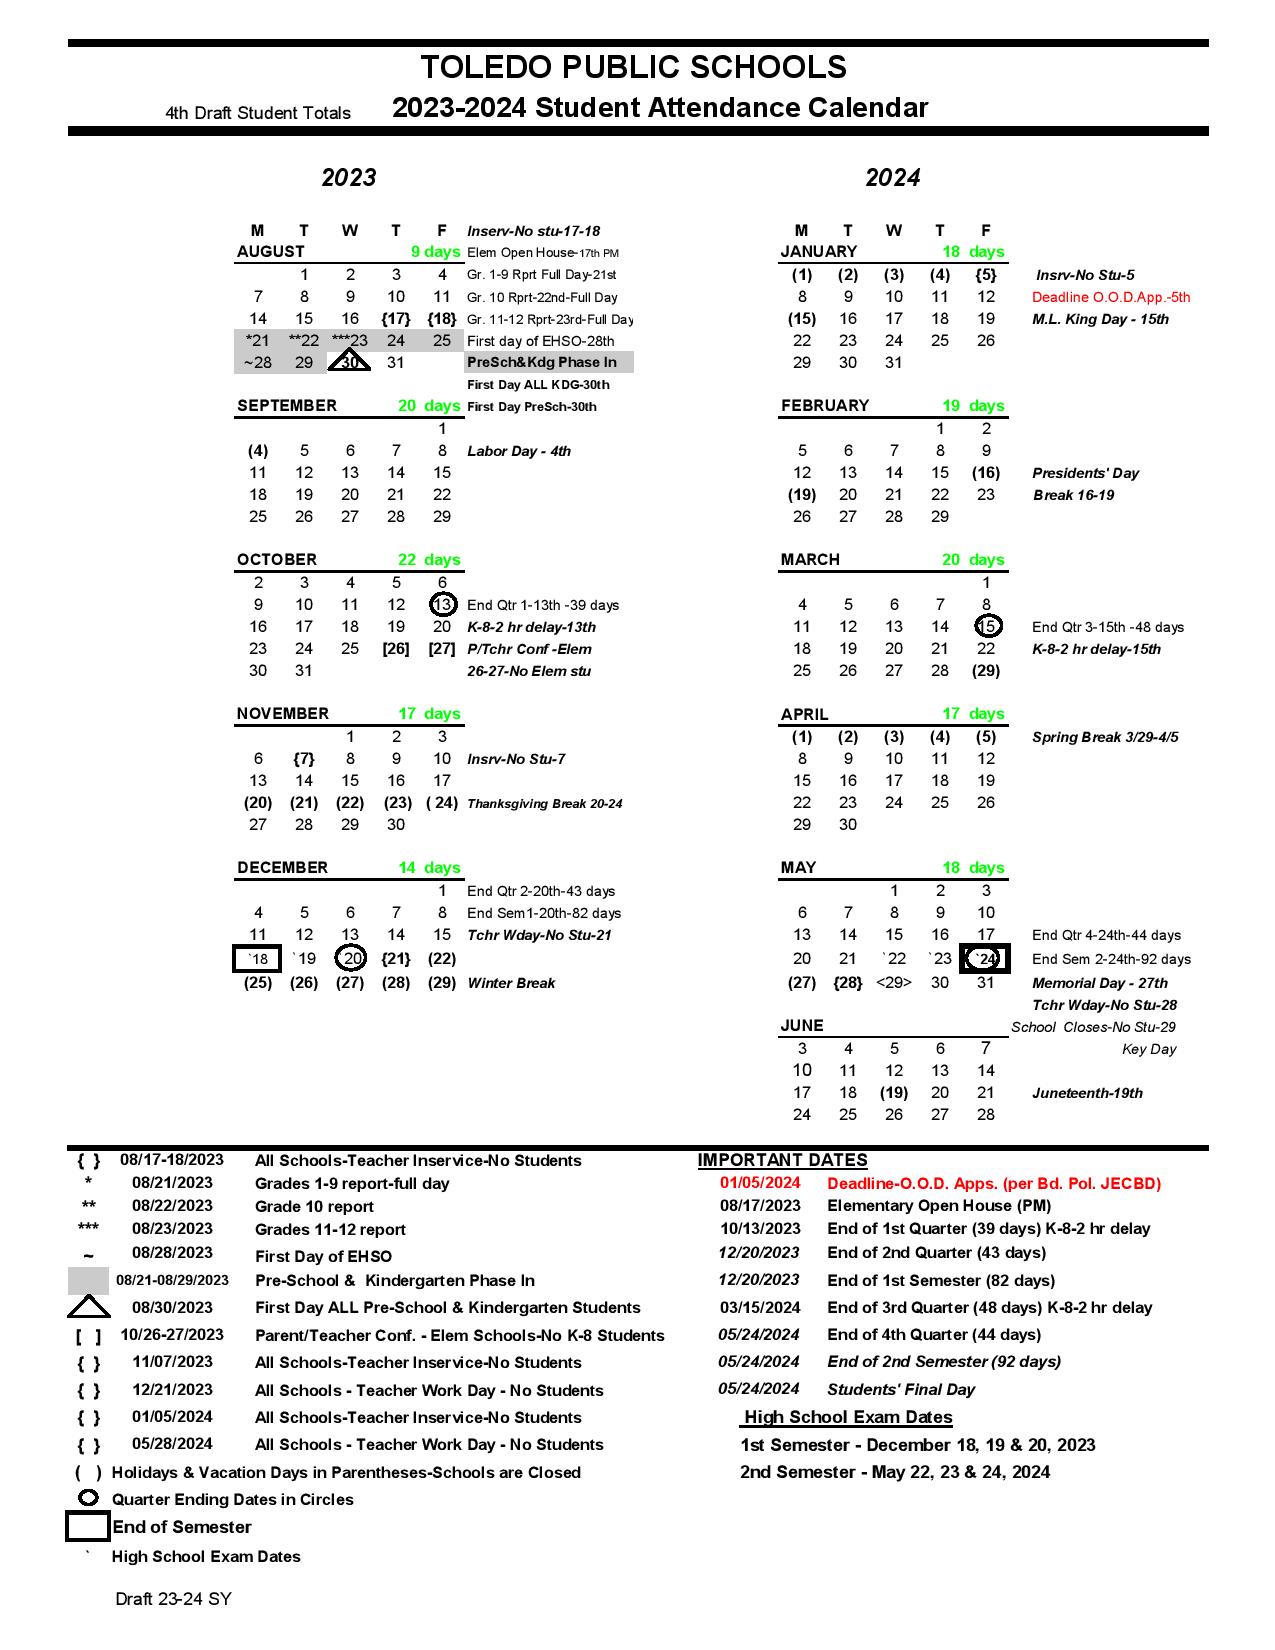 Toledo Public Schools Calendar 2023 2024 in PDF